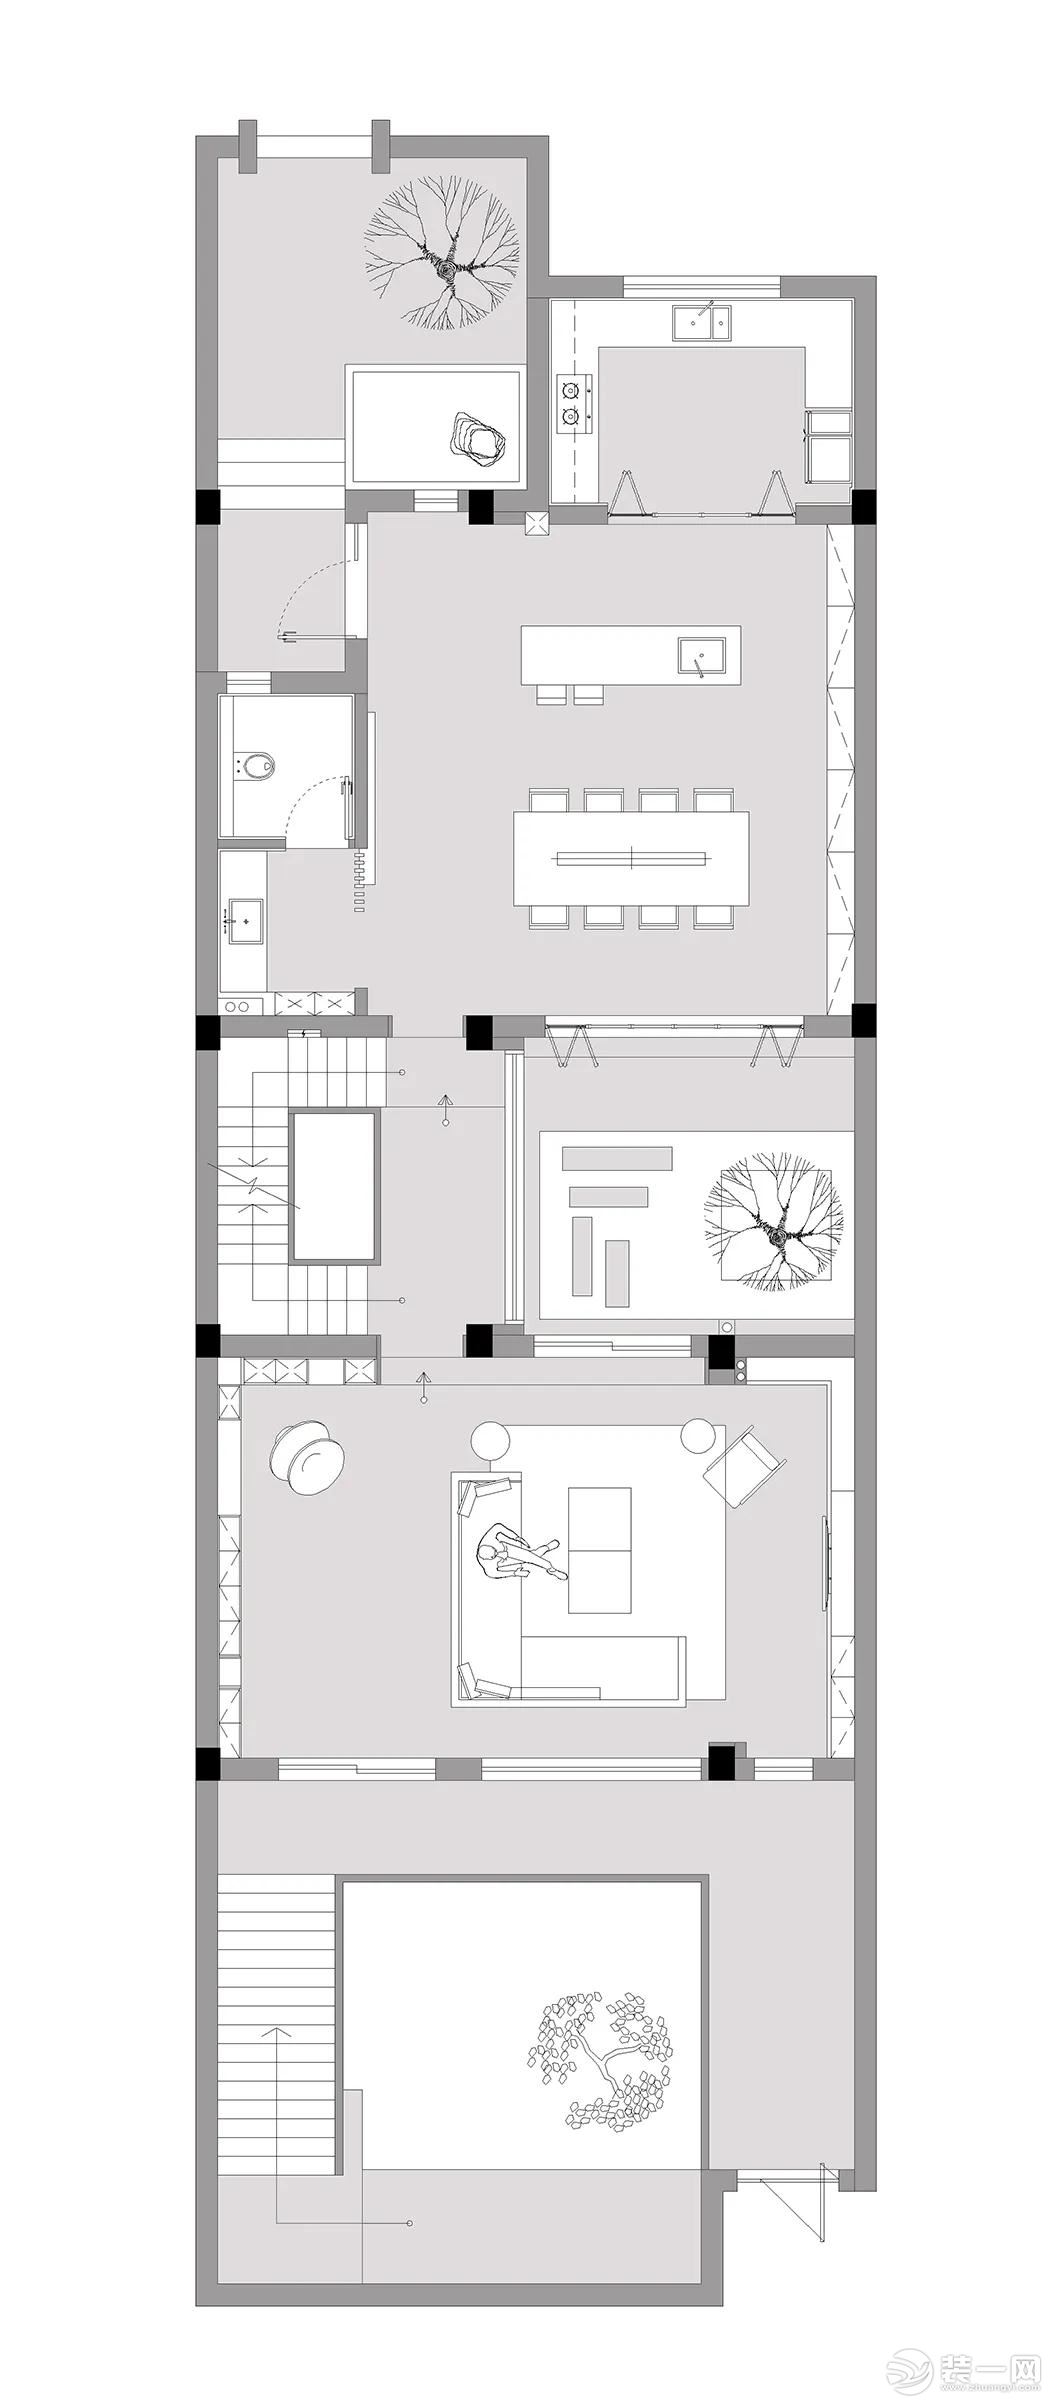 450㎡自建别墅设计——平面布置图2